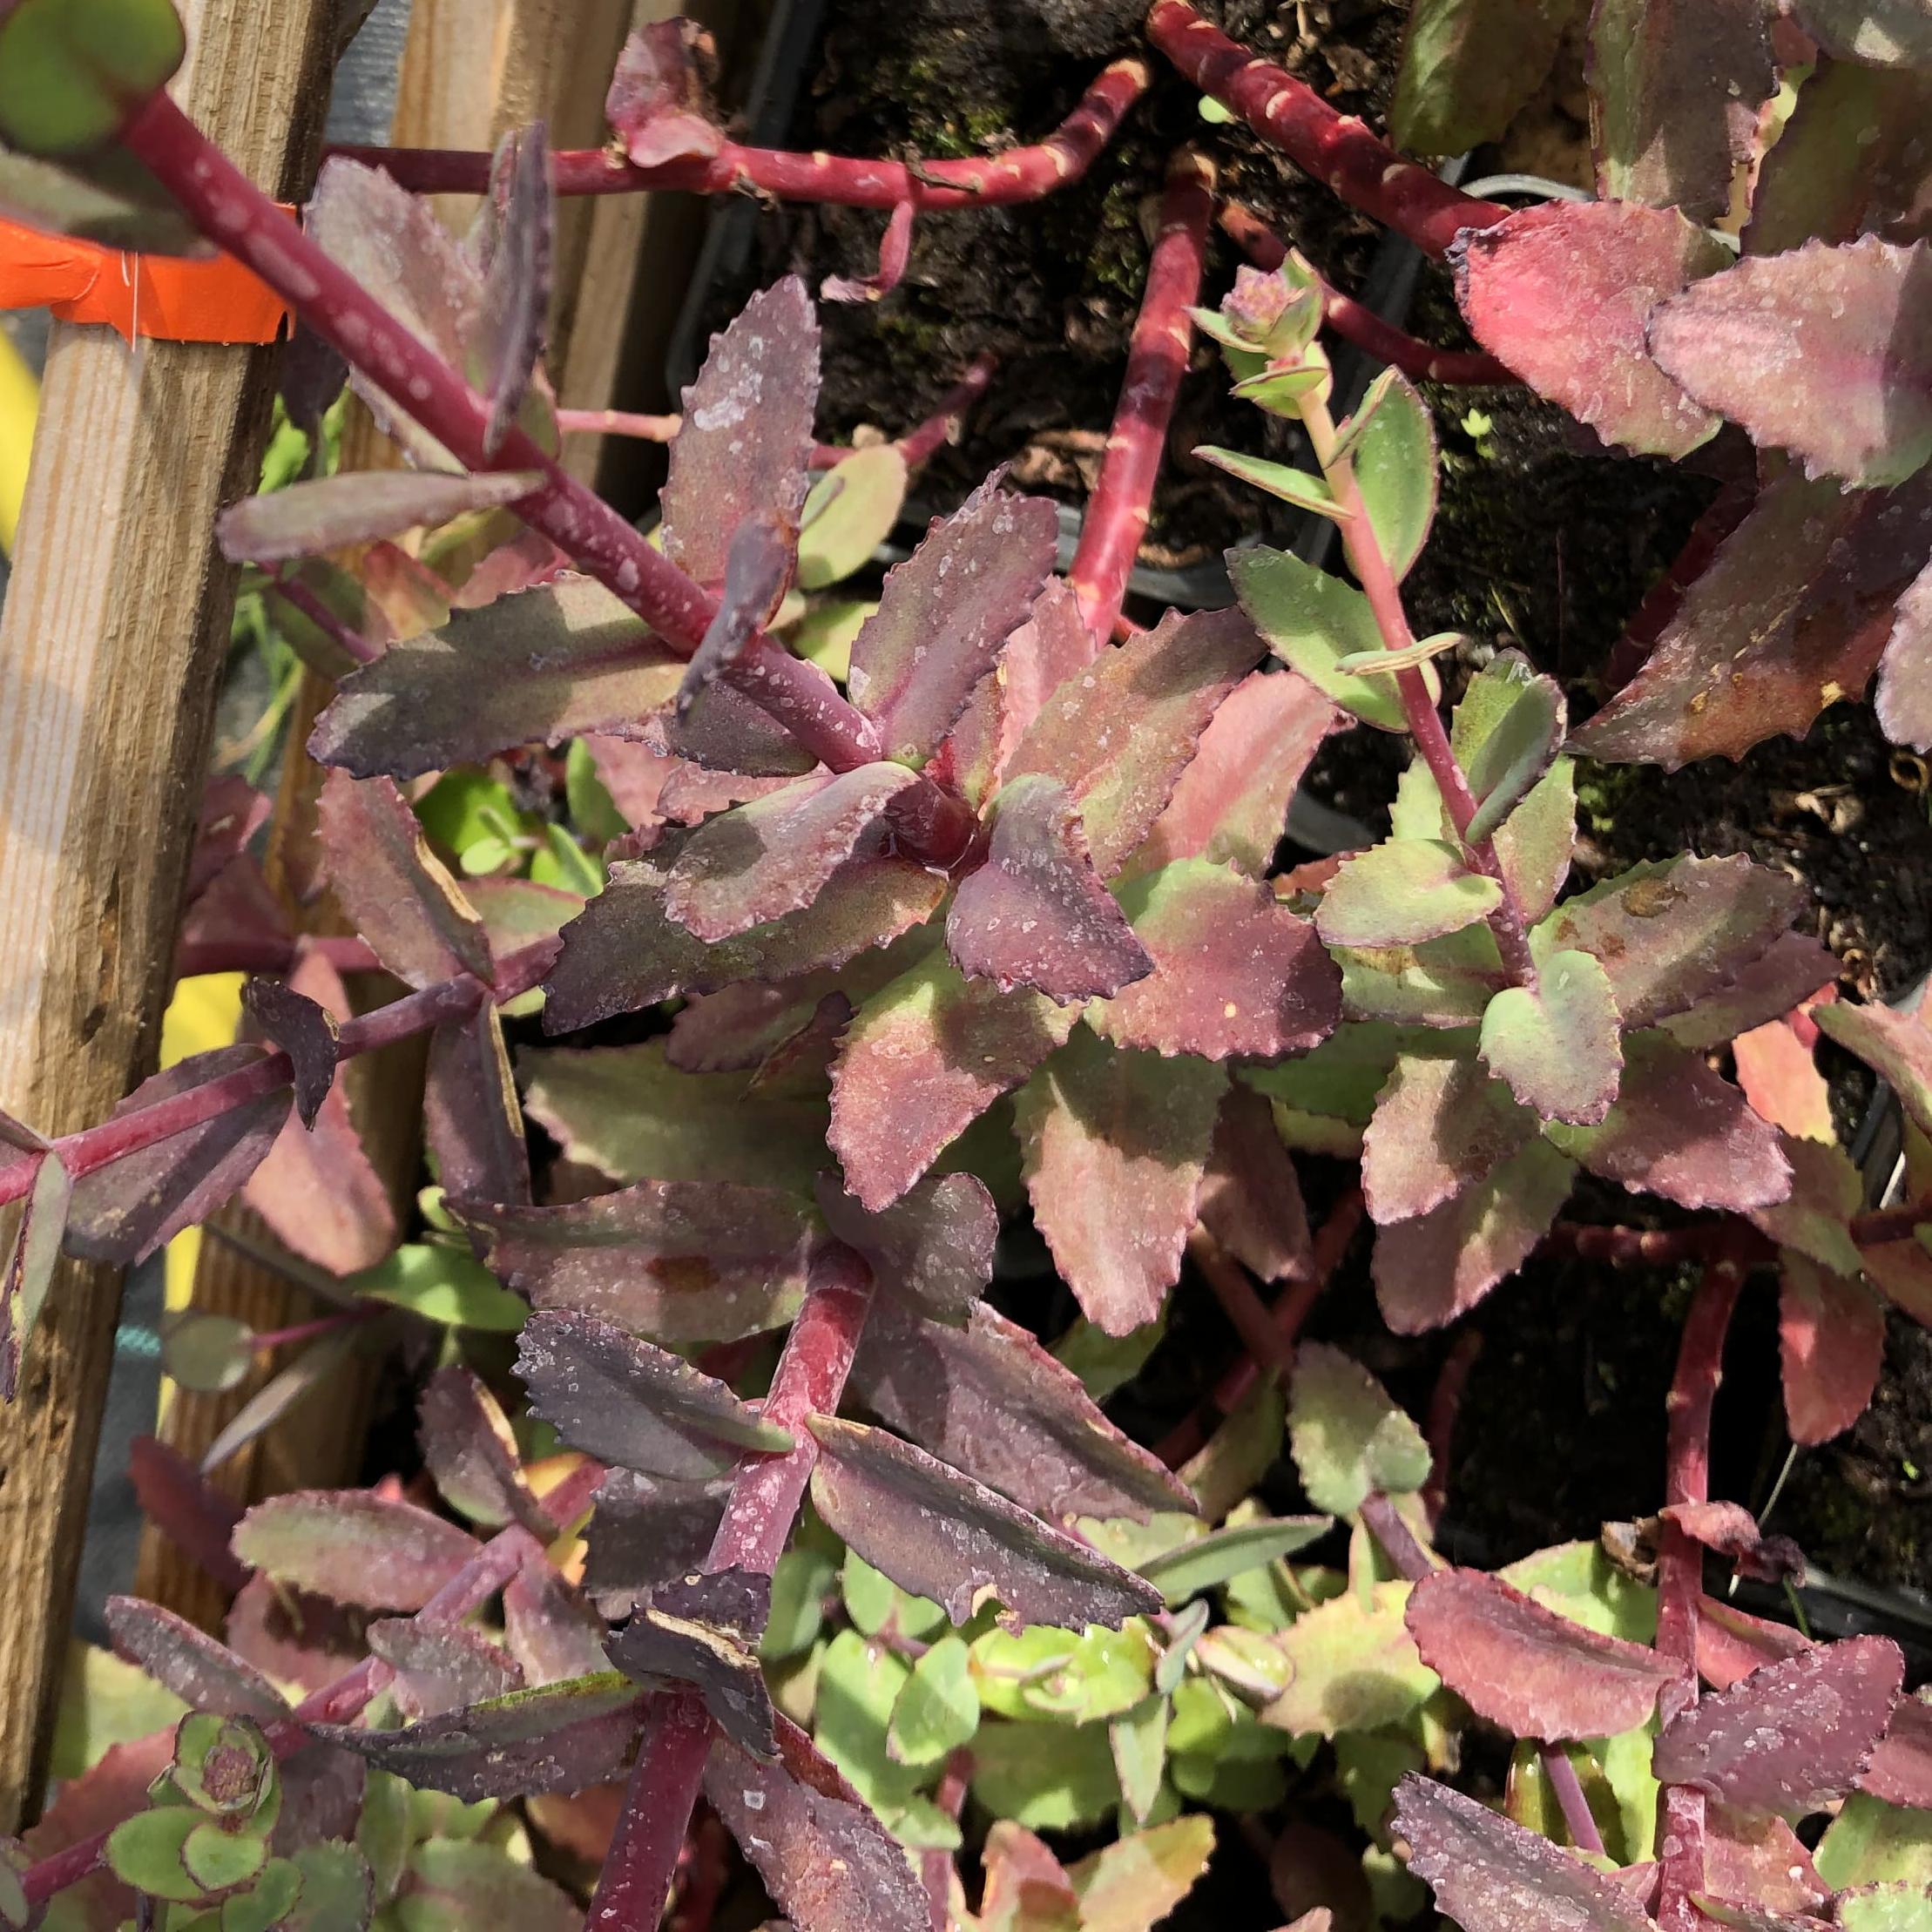 Седум телефиум Ред Каули – очень эффектный засухоустойчивый сорт, вырастающий до 20-30 см в высоту и до 30-40 см в ширину. Цветет с августа по сентябрь. Листья плотные, мясистые, бордово-коричневые, красиво контрастируют с ярко-красными щитковидными соцве